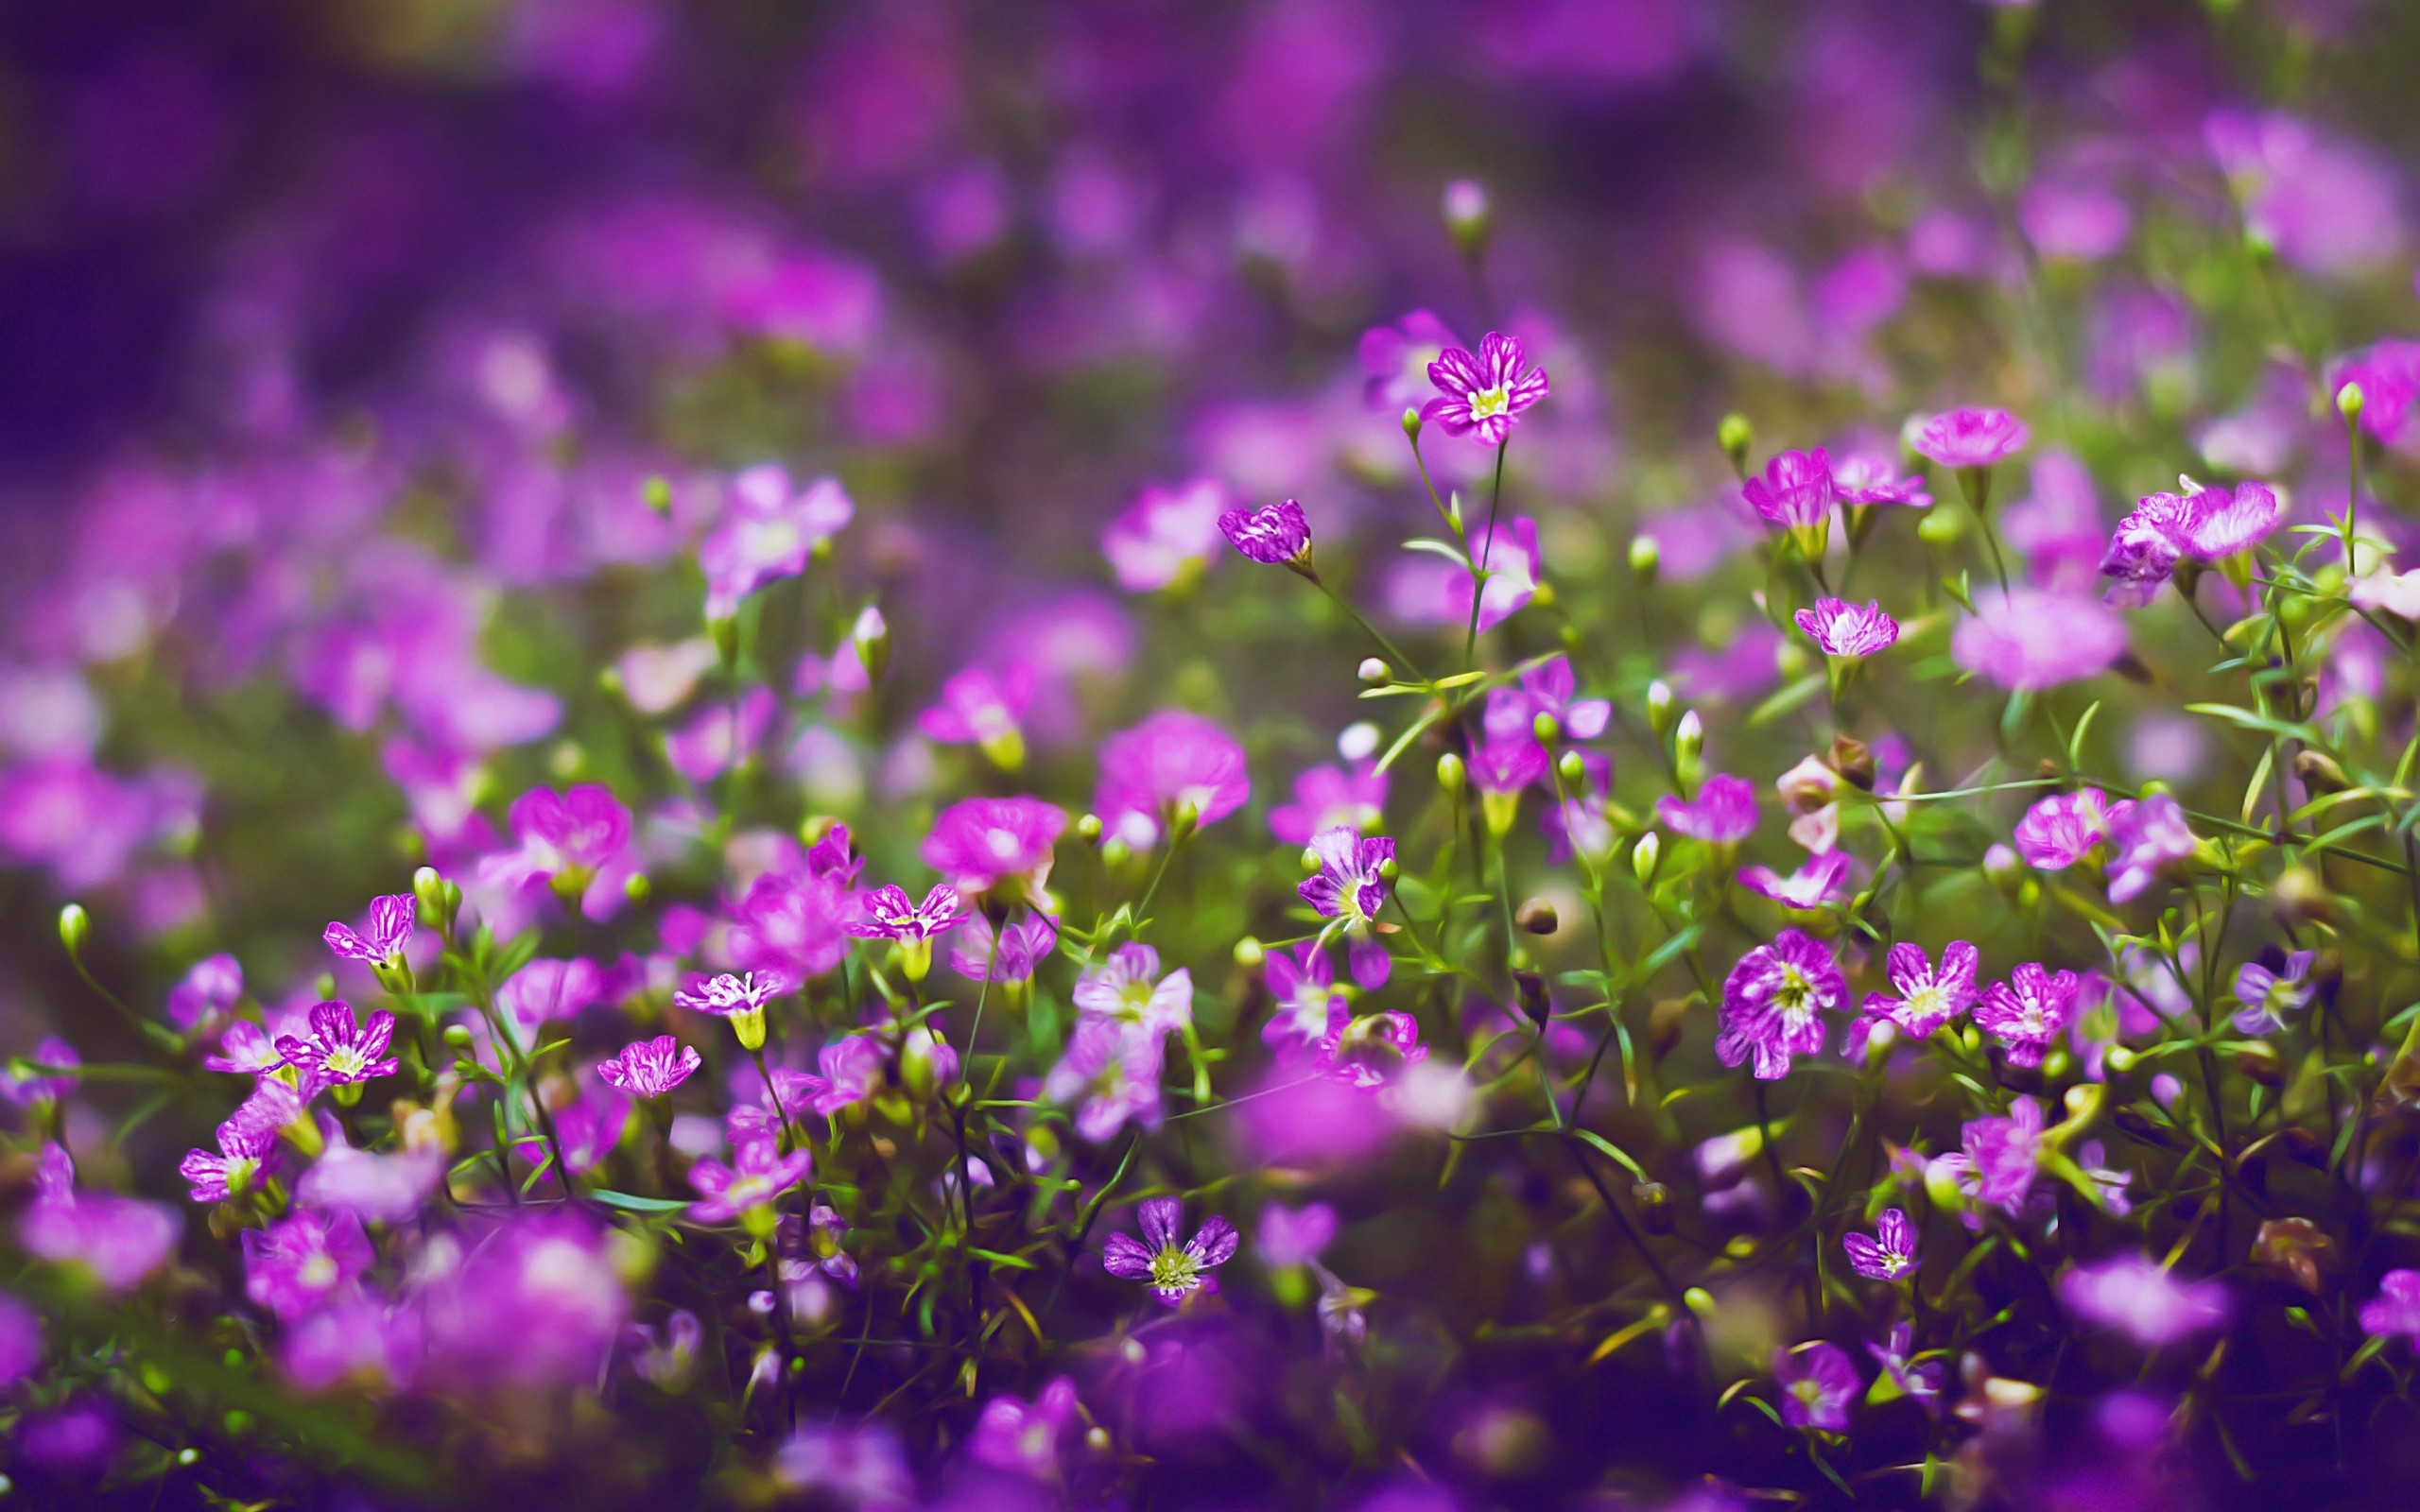 Tổng hợp những hình ảnh đẹp, status hay ý nghĩa về hoa dại - [Kích thước hình ảnh: 2560x1600 px]